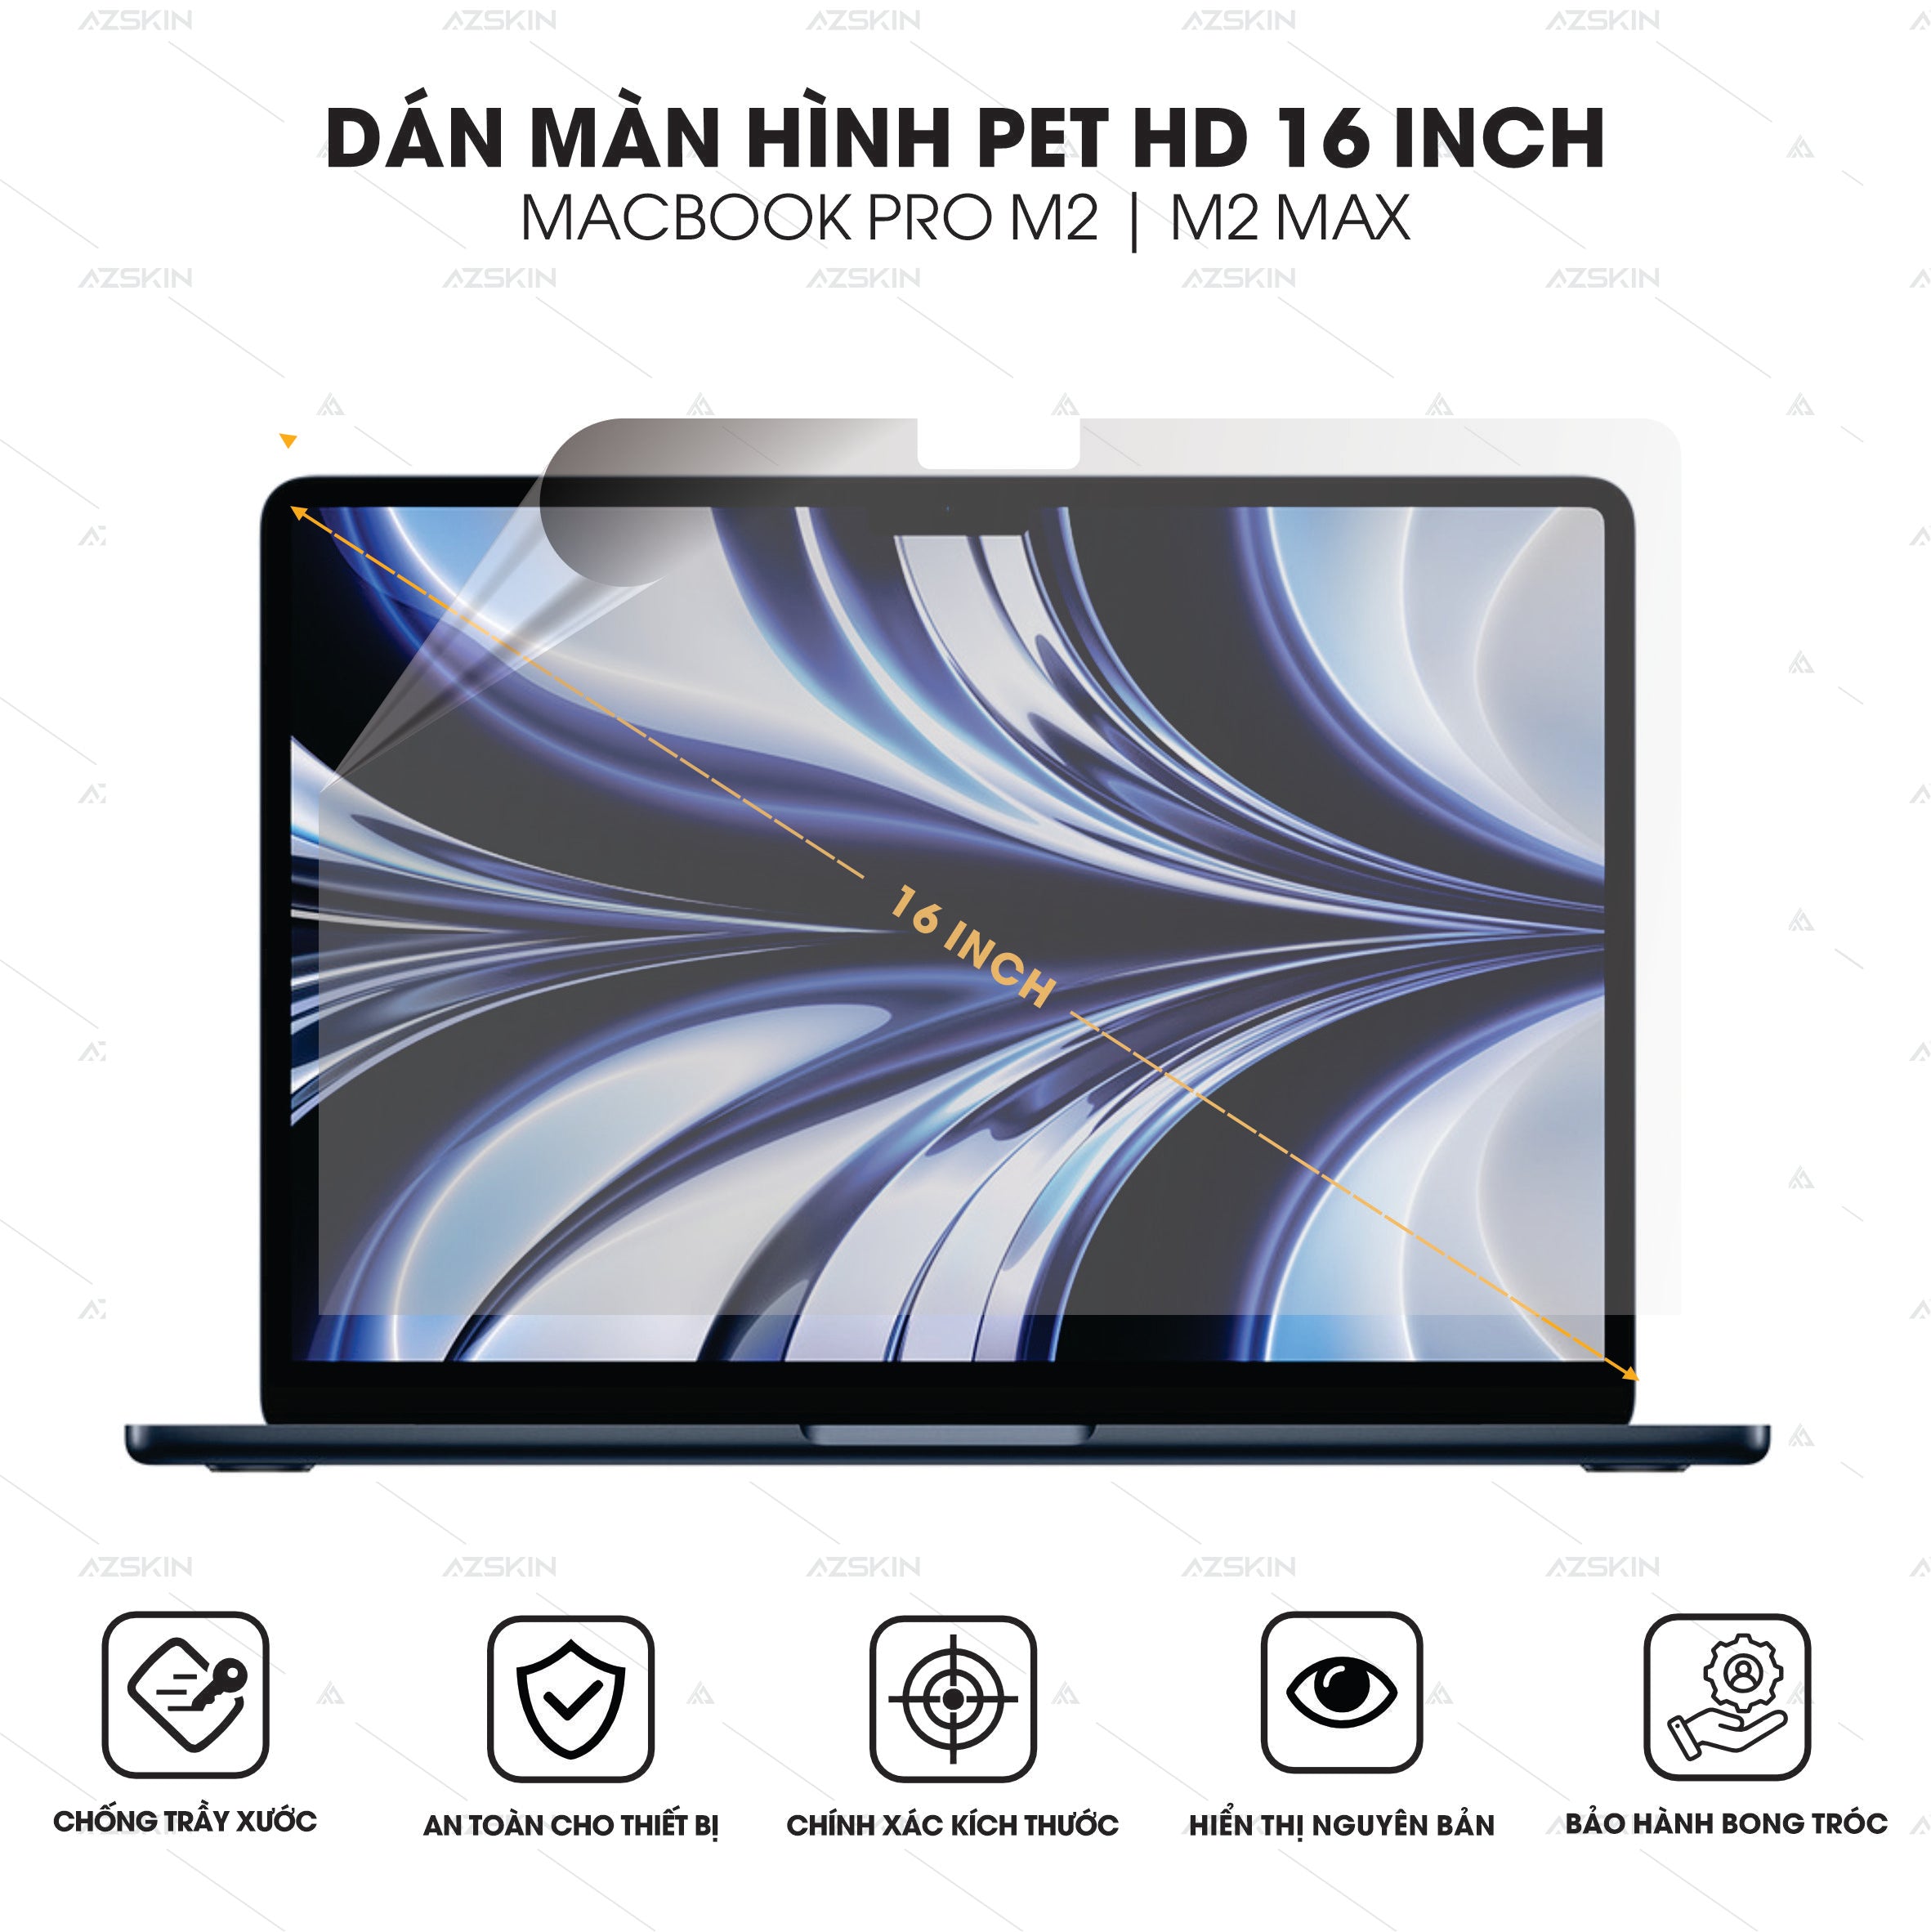 Dán màn hình PET HD cho Macbook Pro M2 / M2 Max 16 inch